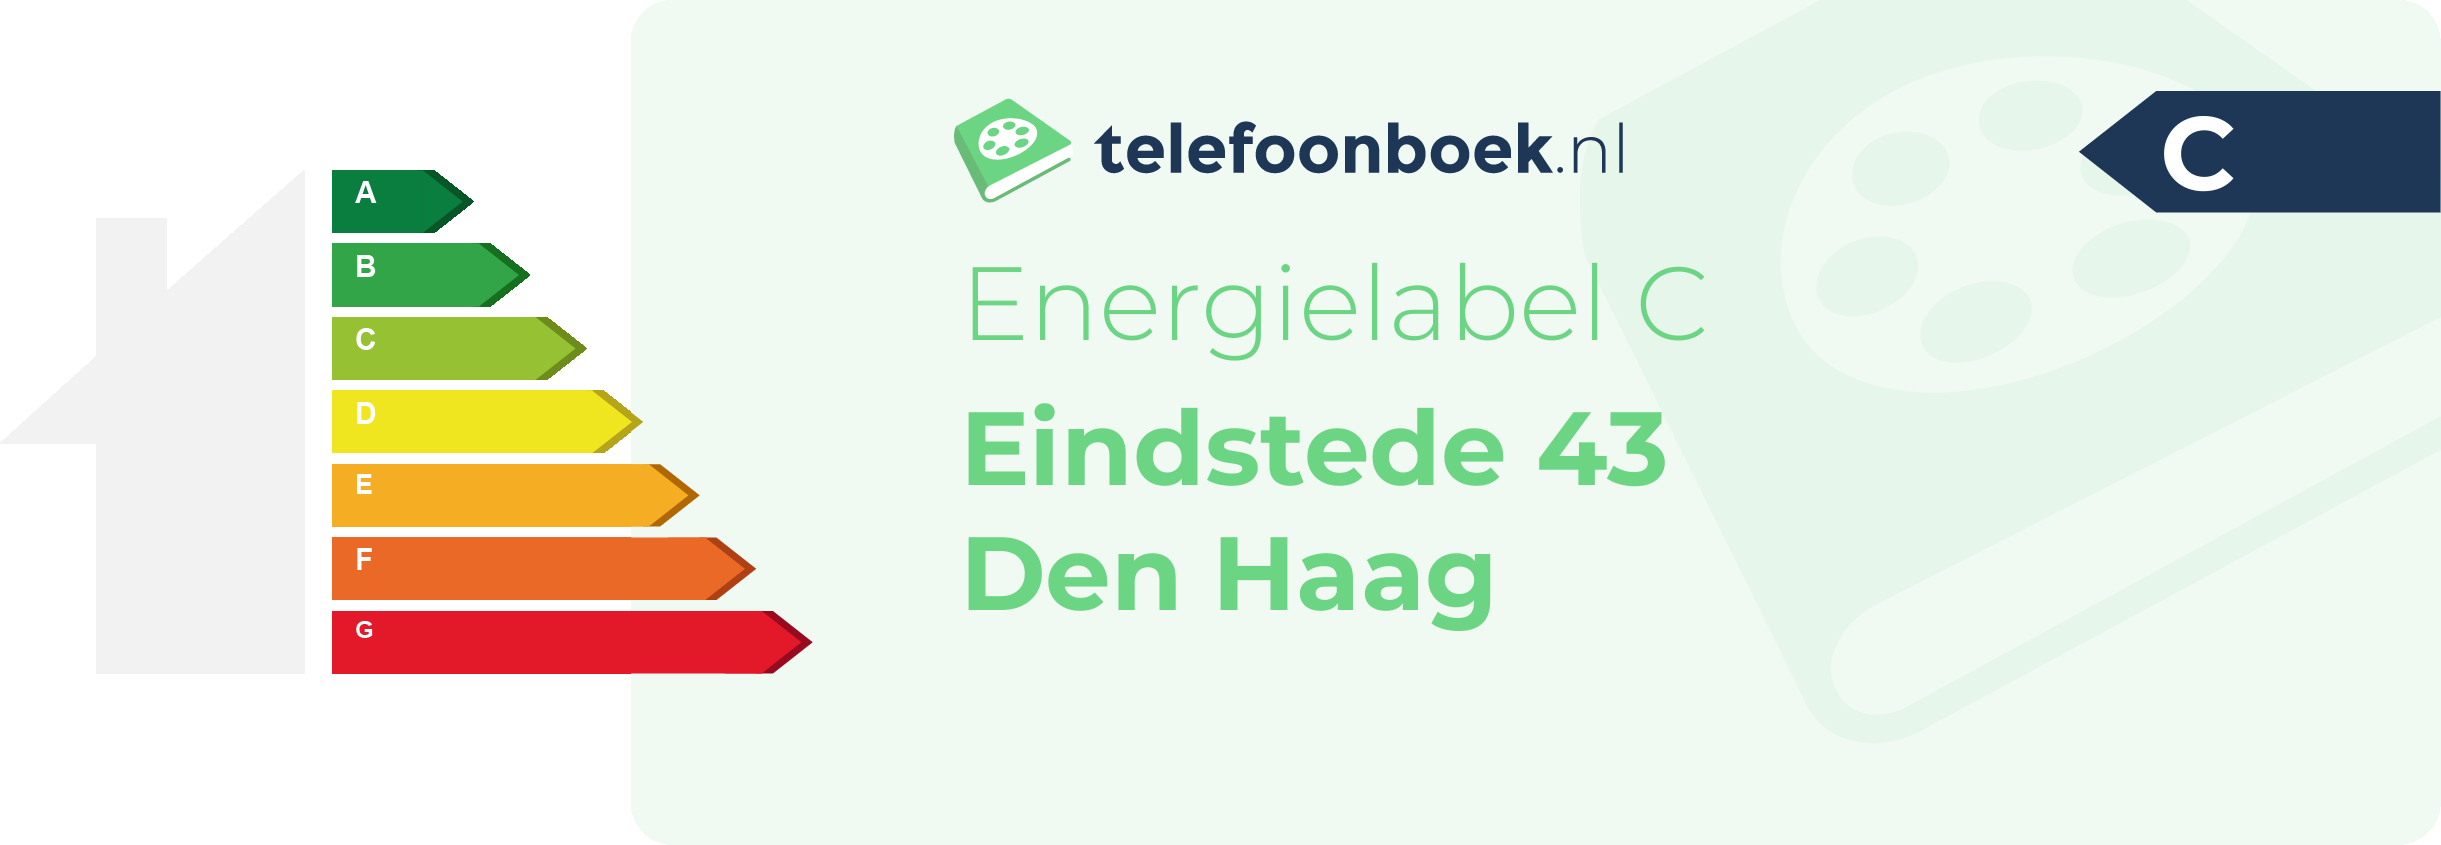 Energielabel Eindstede 43 Den Haag